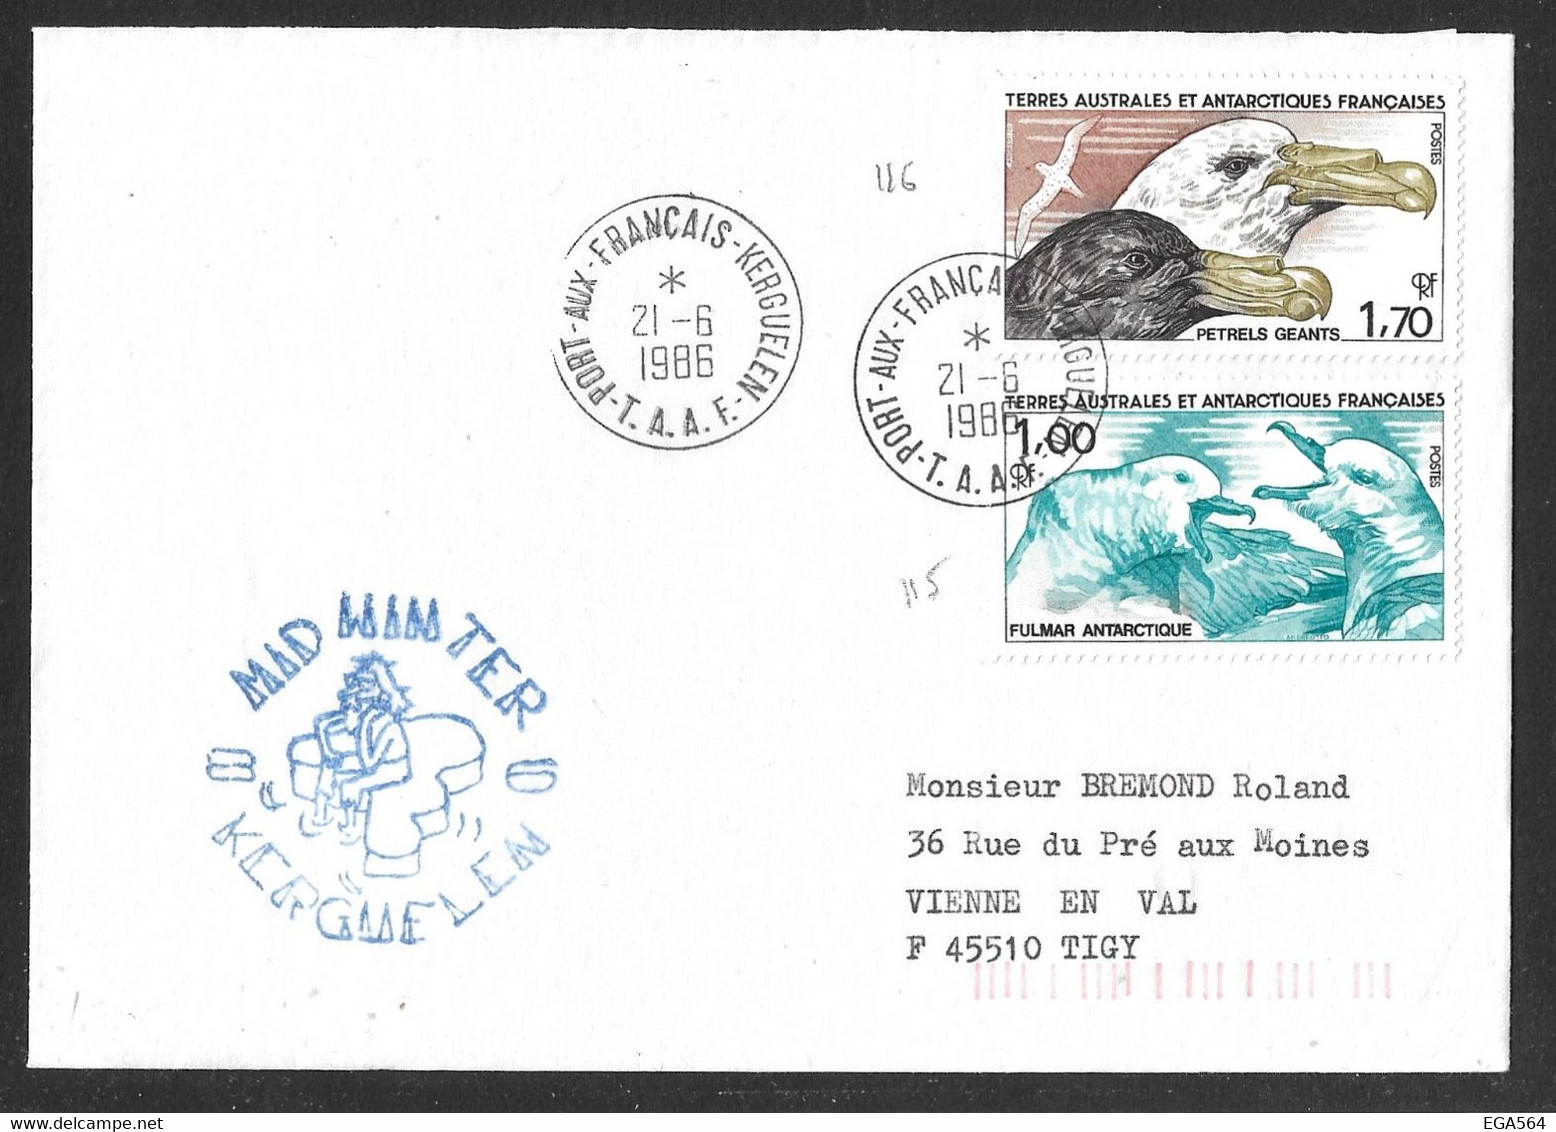 22 - Y&T PO 115-116 Fulmar Antarctique - Pétrels Géants Sur Pli Du 21.6.1986 Kerguelen -  MIDWINTER - Covers & Documents